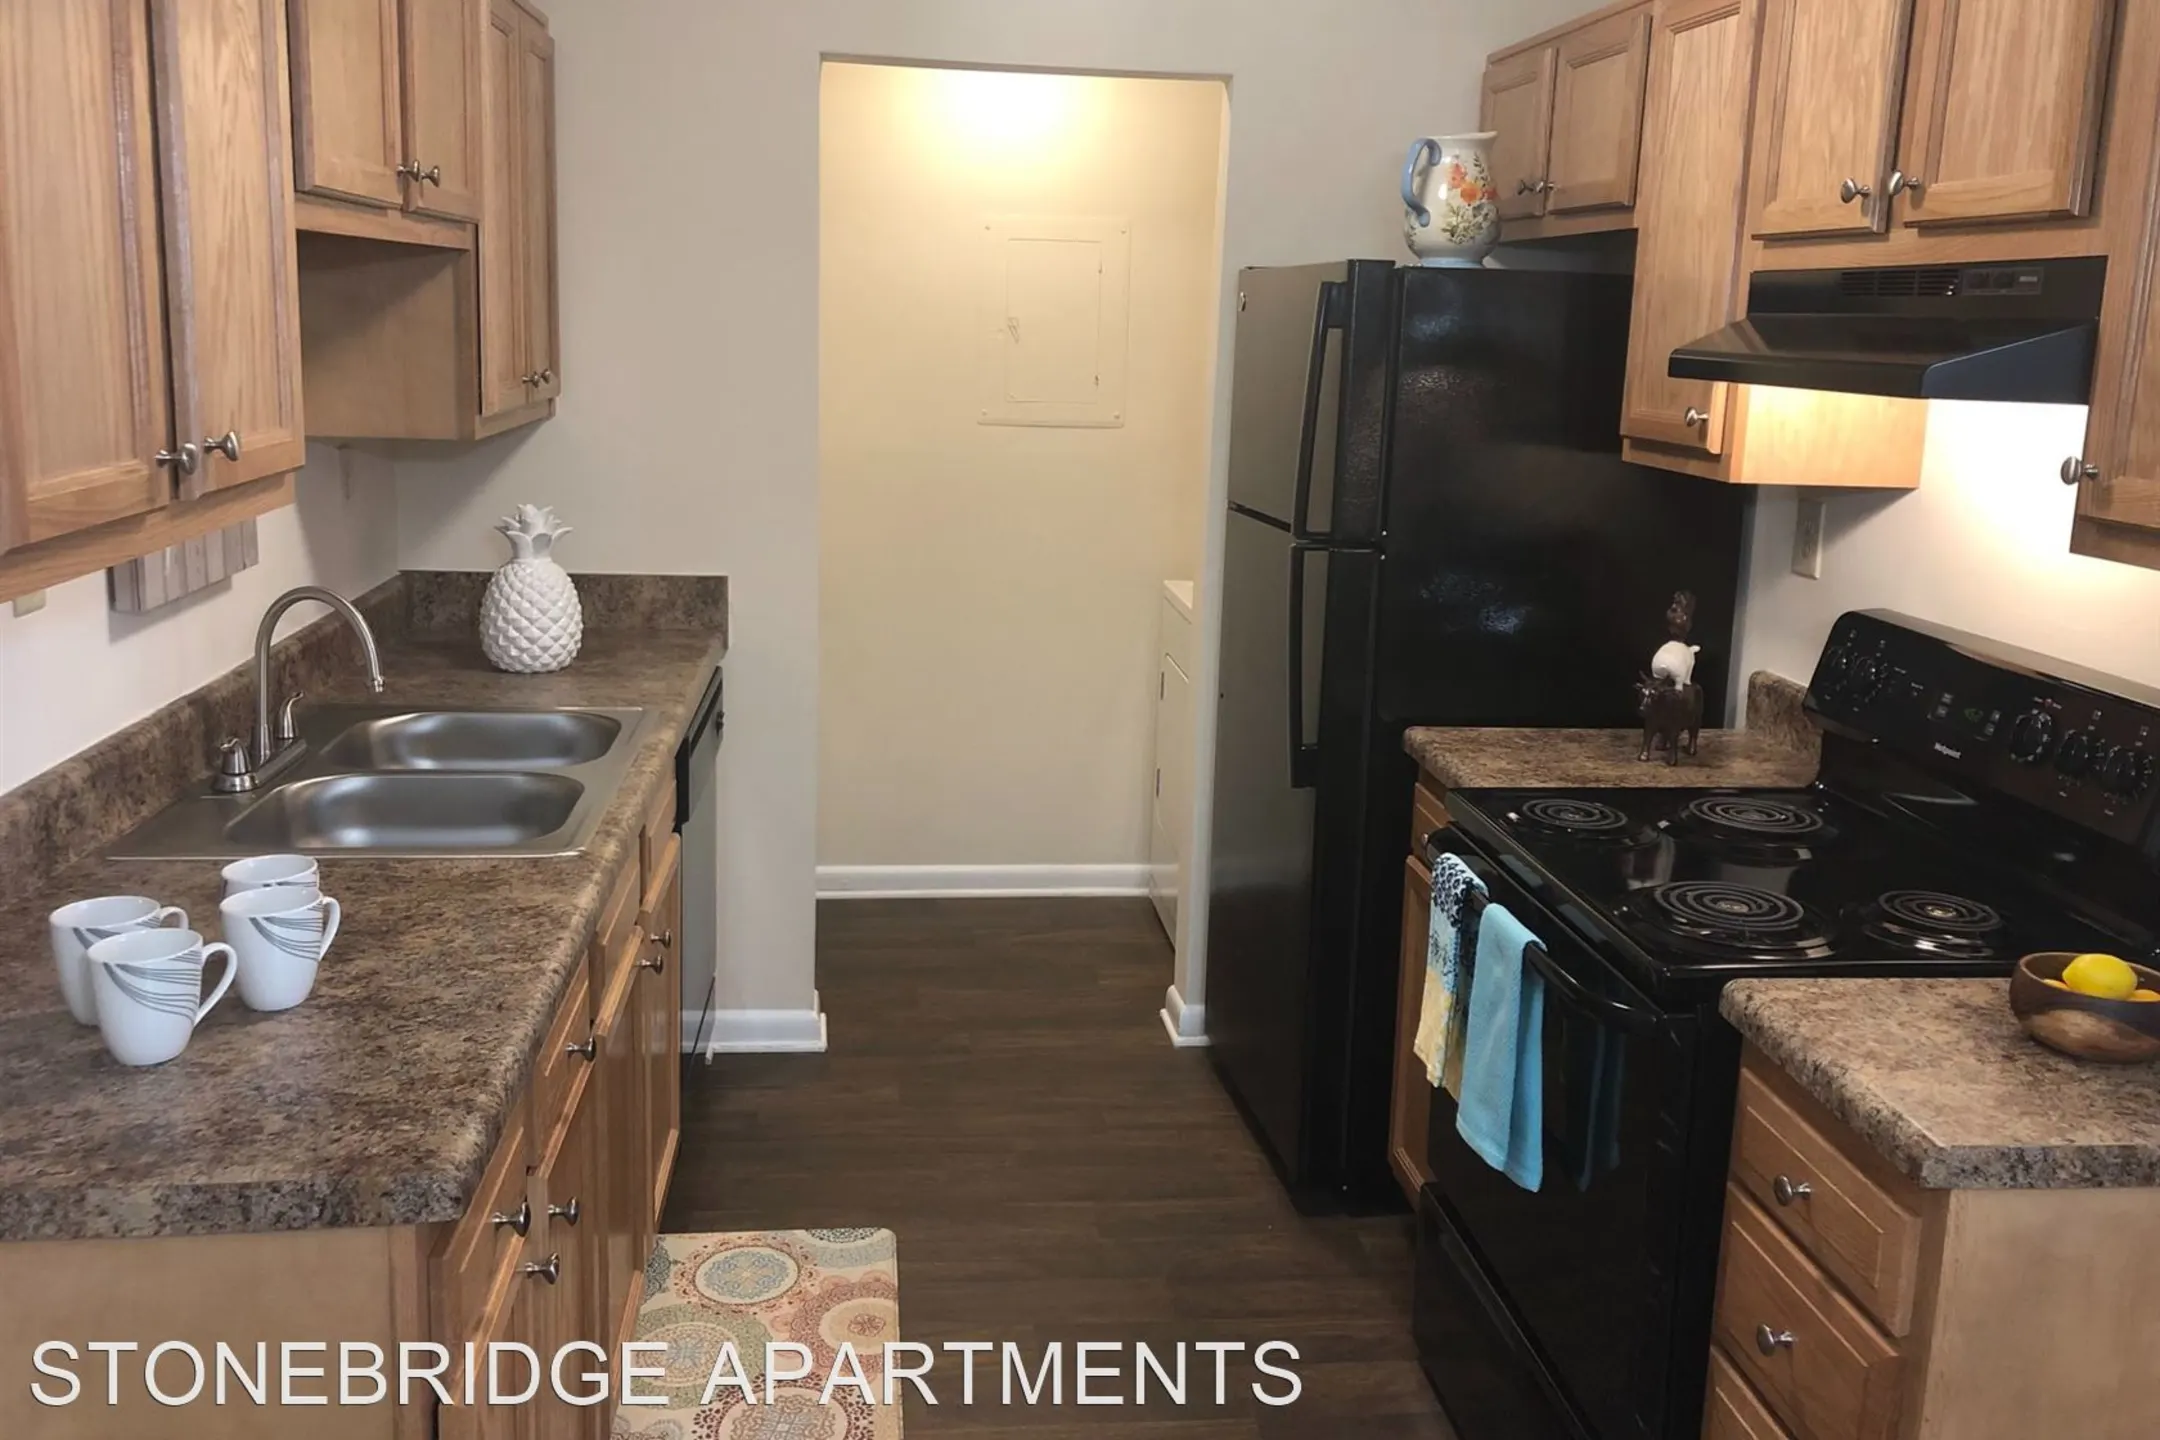 Kitchen - Stonebridge Apartments - Chesapeake, VA